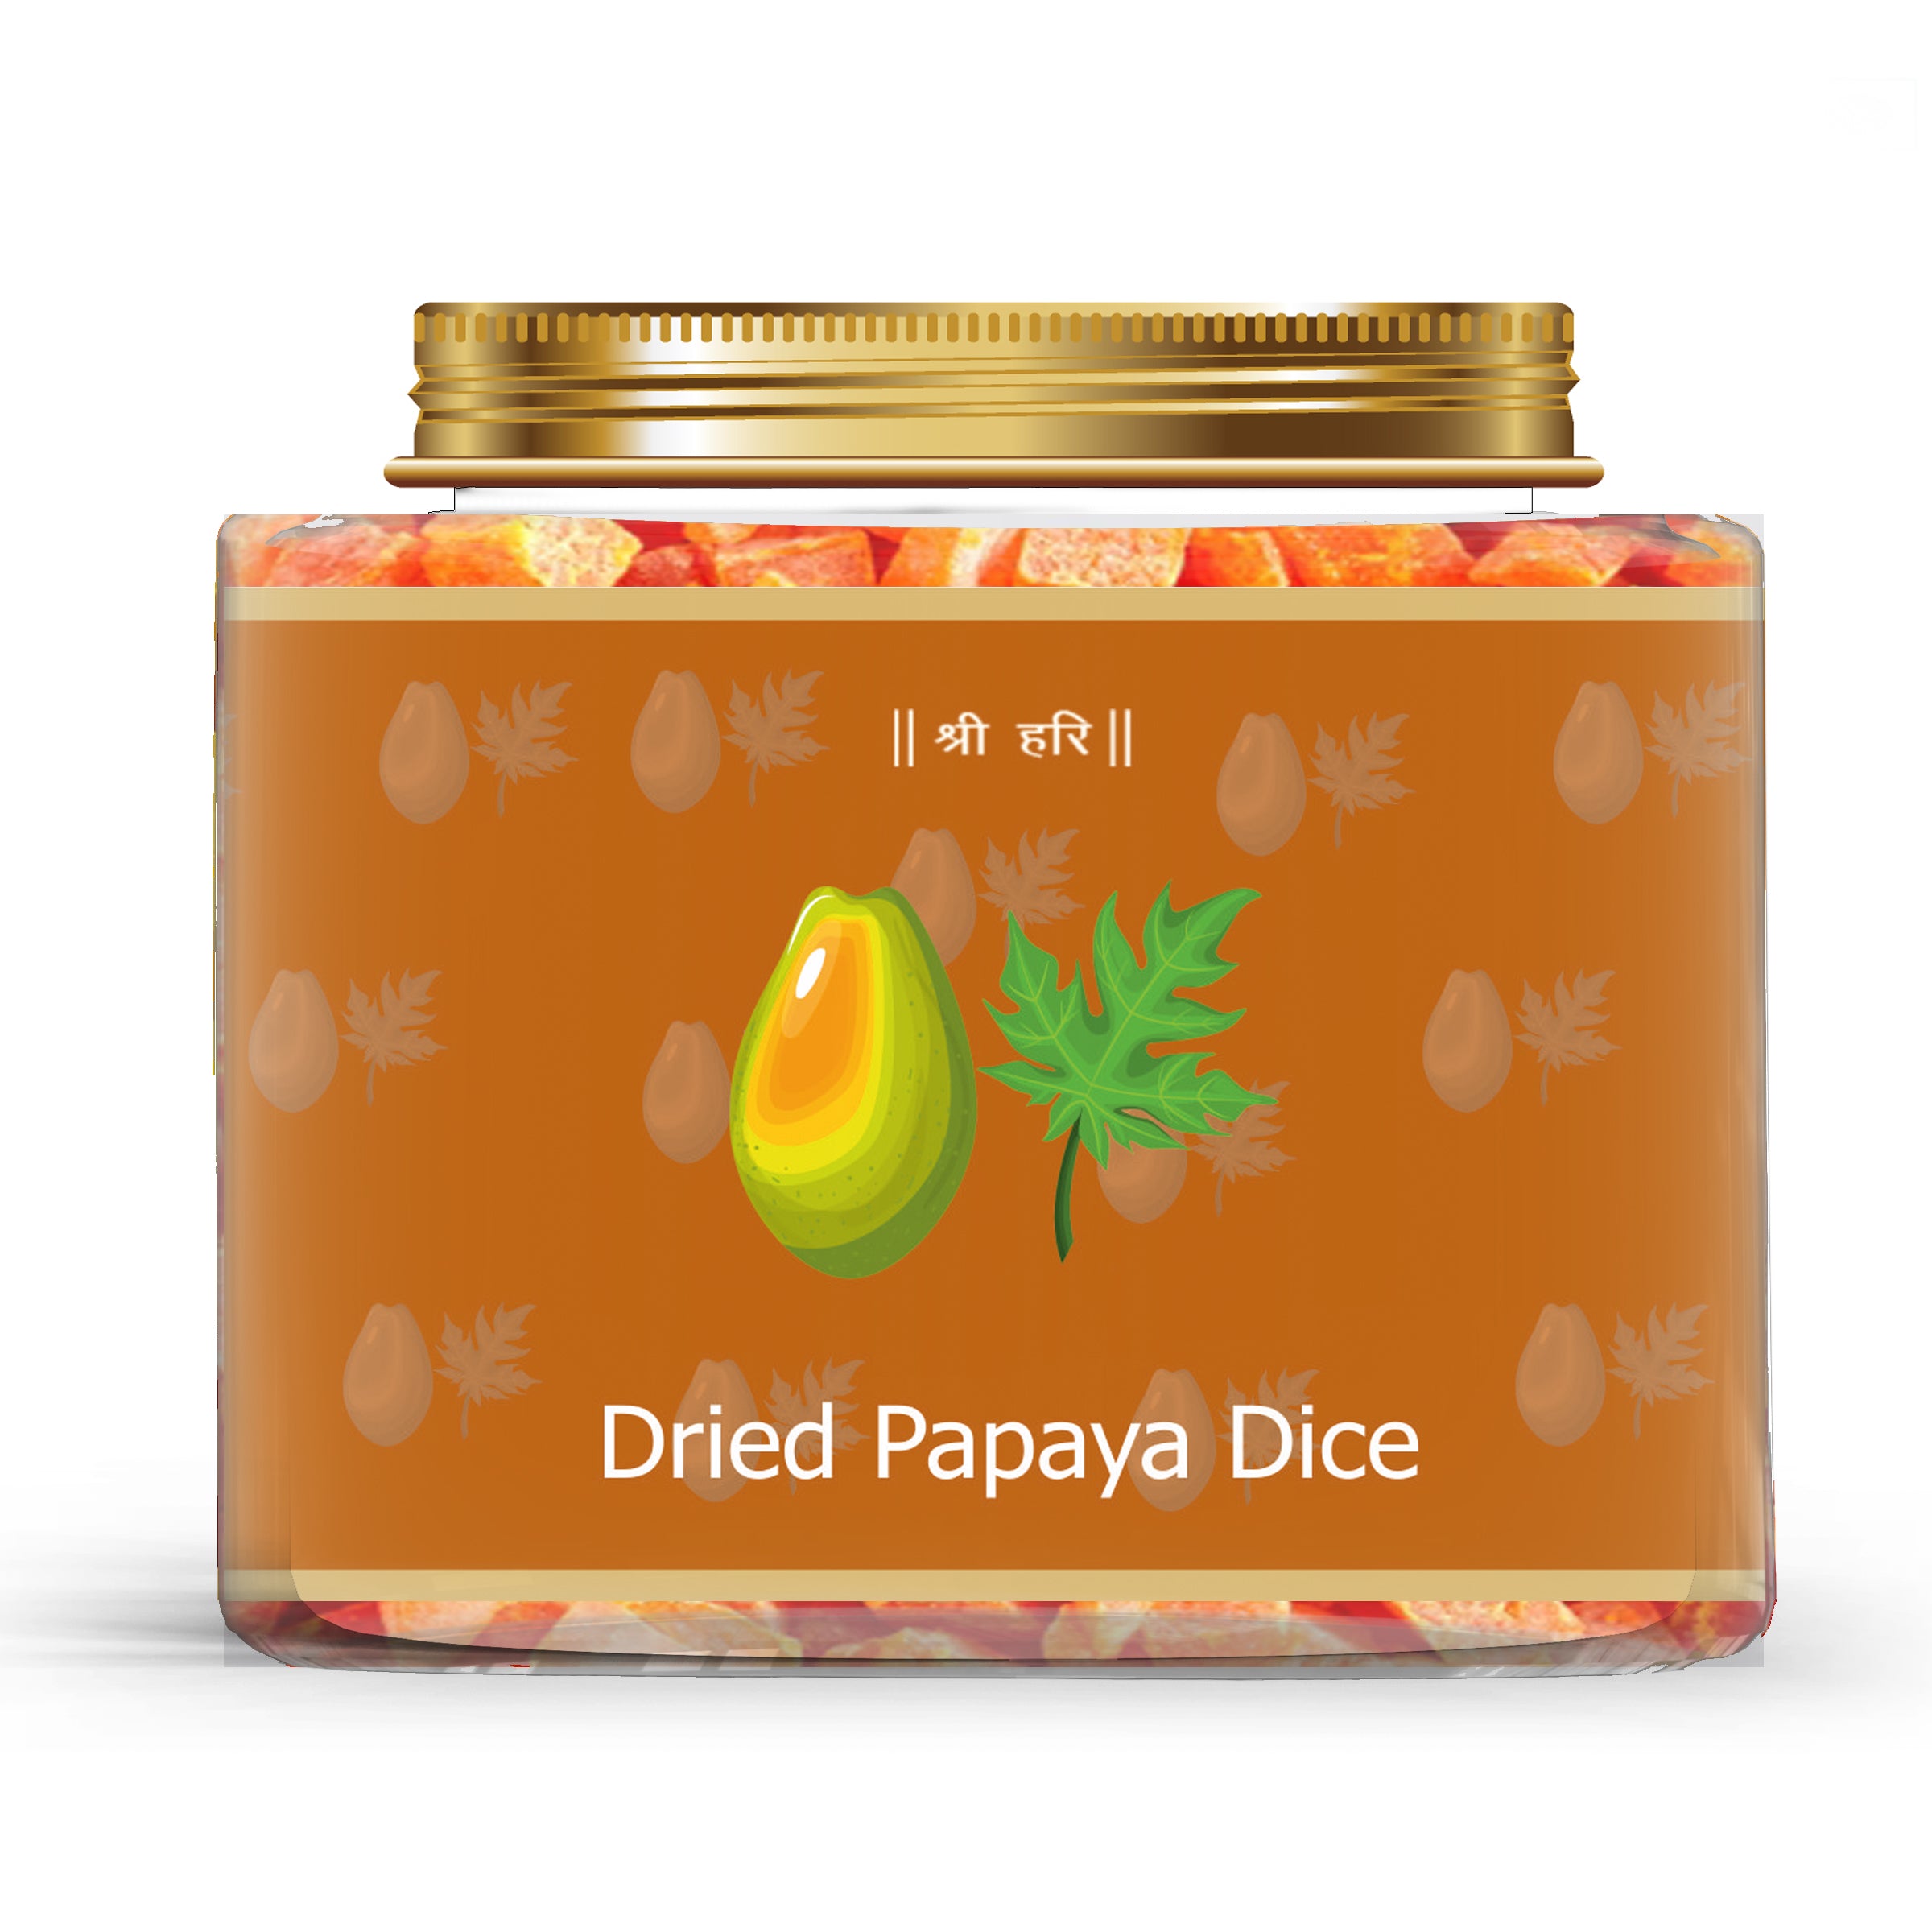 Dried Papaya Dice Premium Quality 250gm